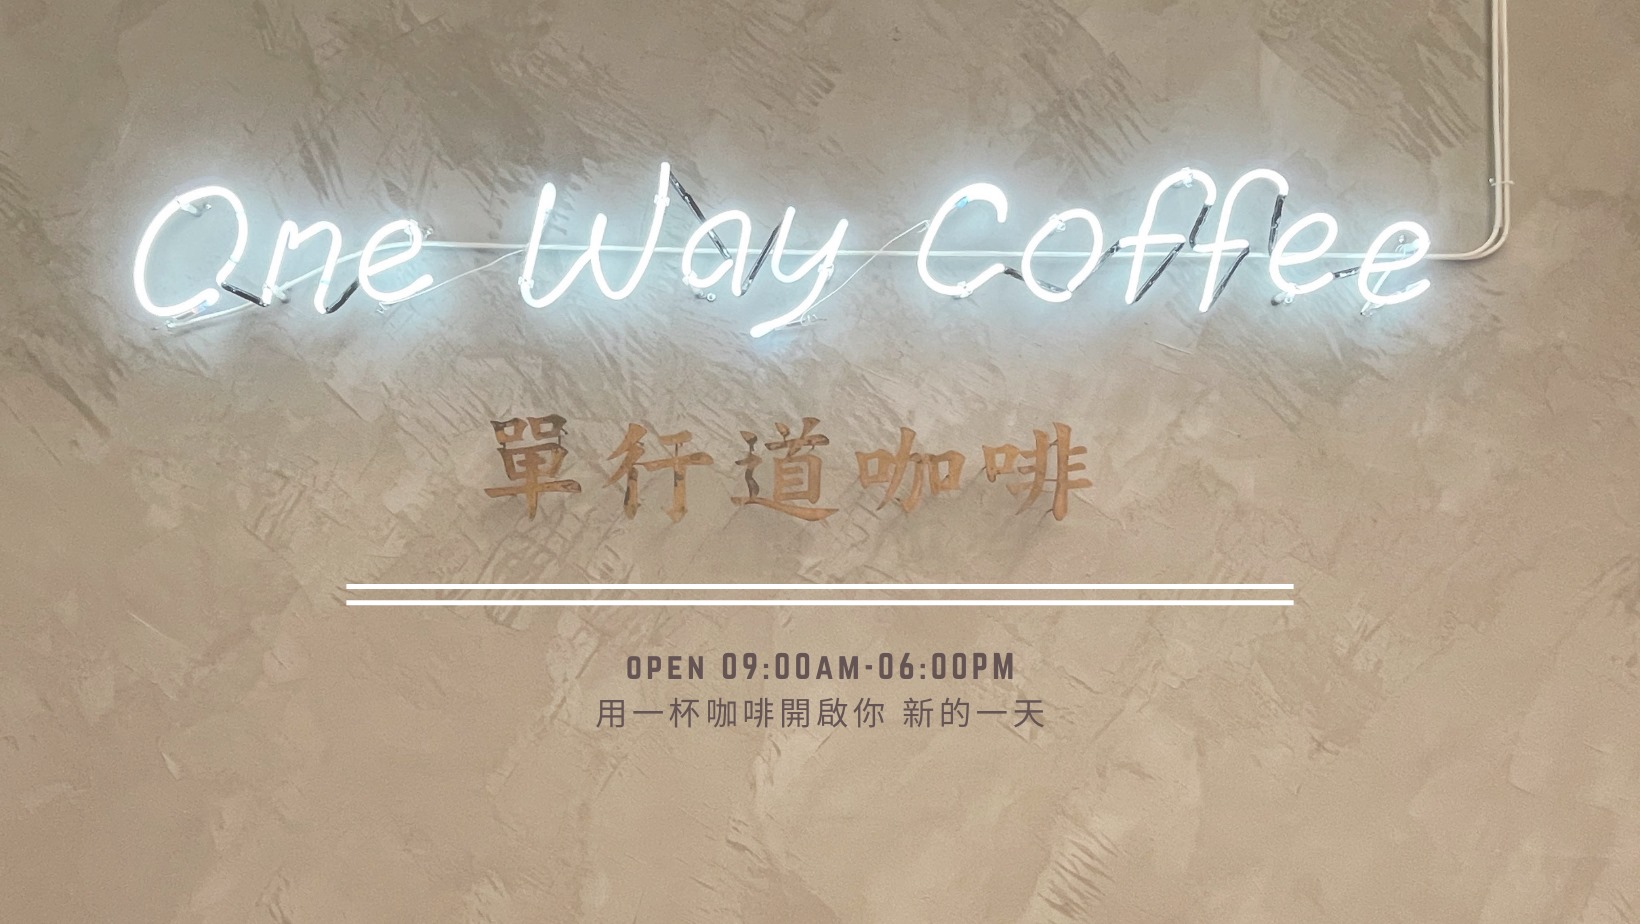 ONE WAY COFFEE